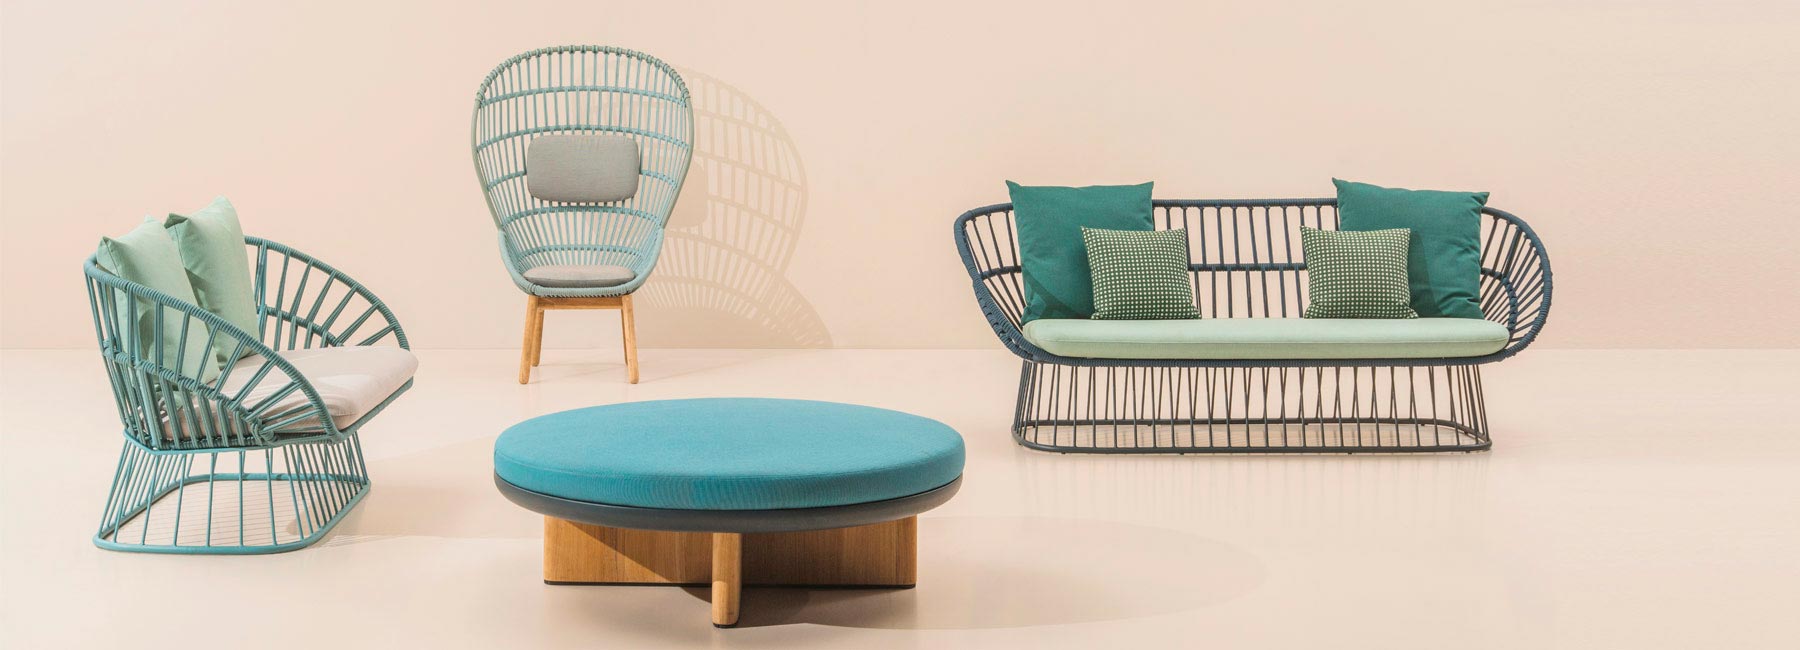 Doshi Levien представил новую коллекцию мебели Cala для KETTAL на выставке IMM cologne 2018